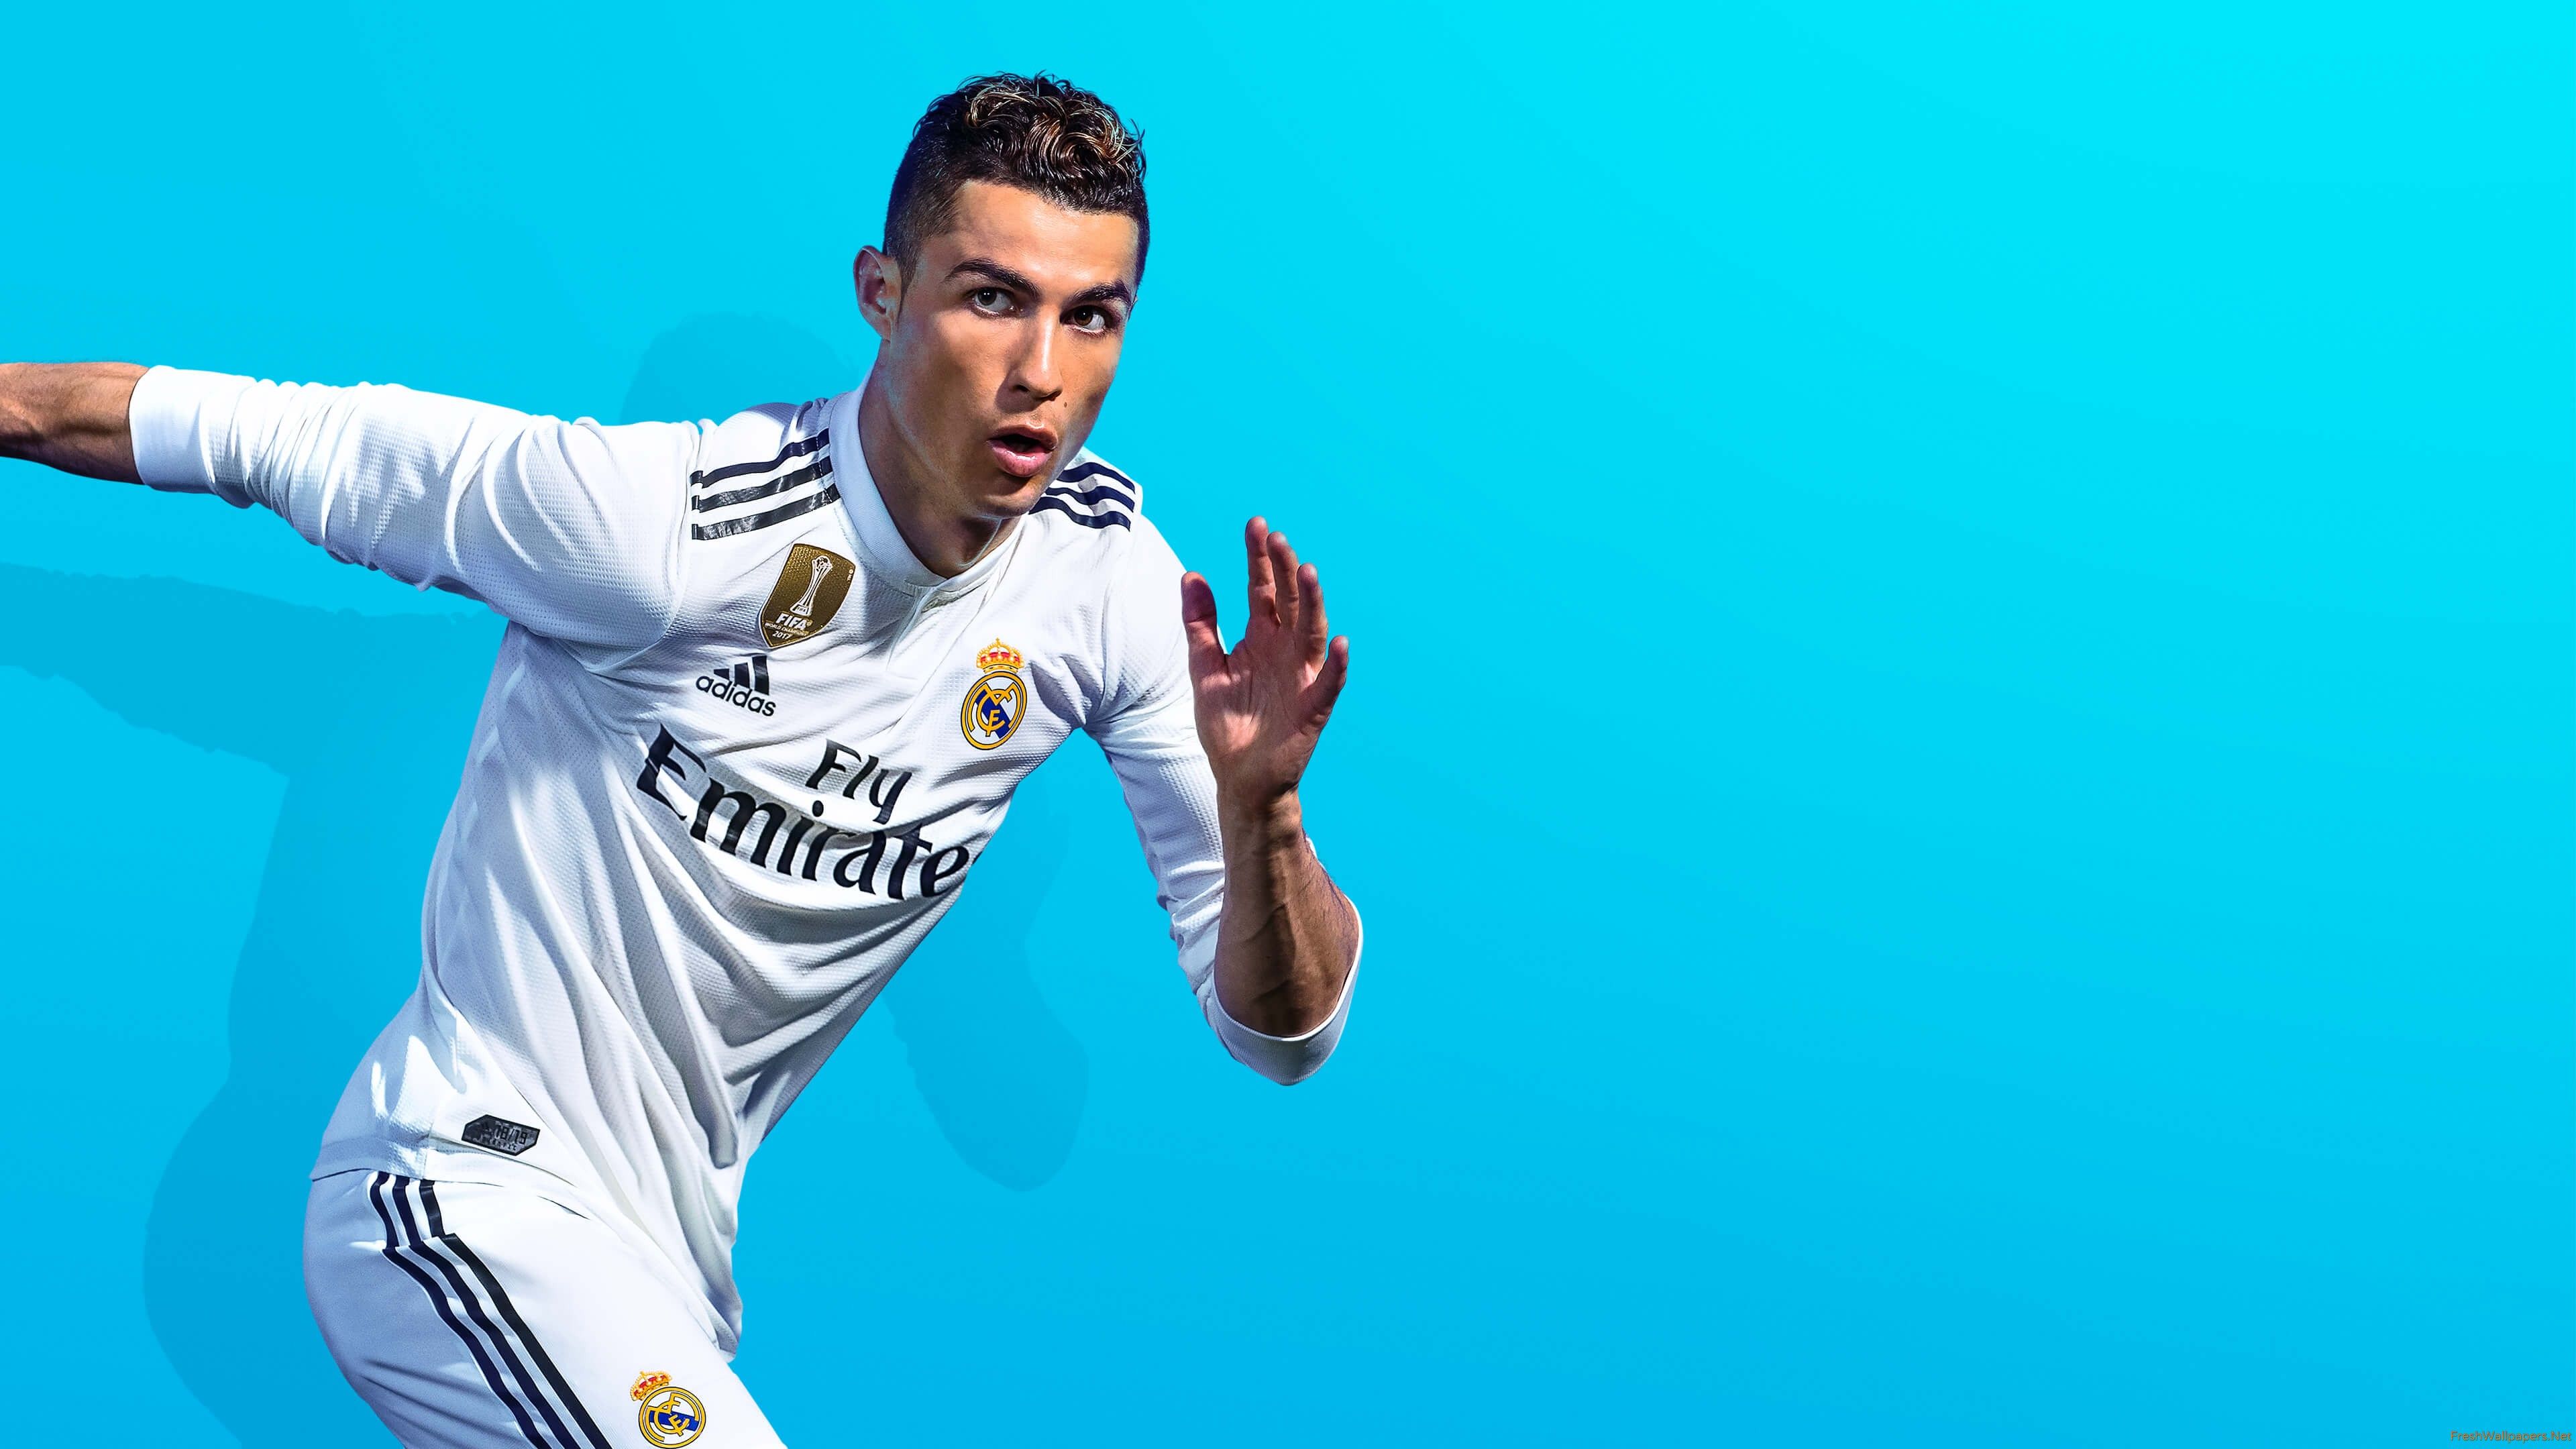 Cristiano Ronaldo en FIFA 19 4K fondos de pantalla | Papeles pintados frescos